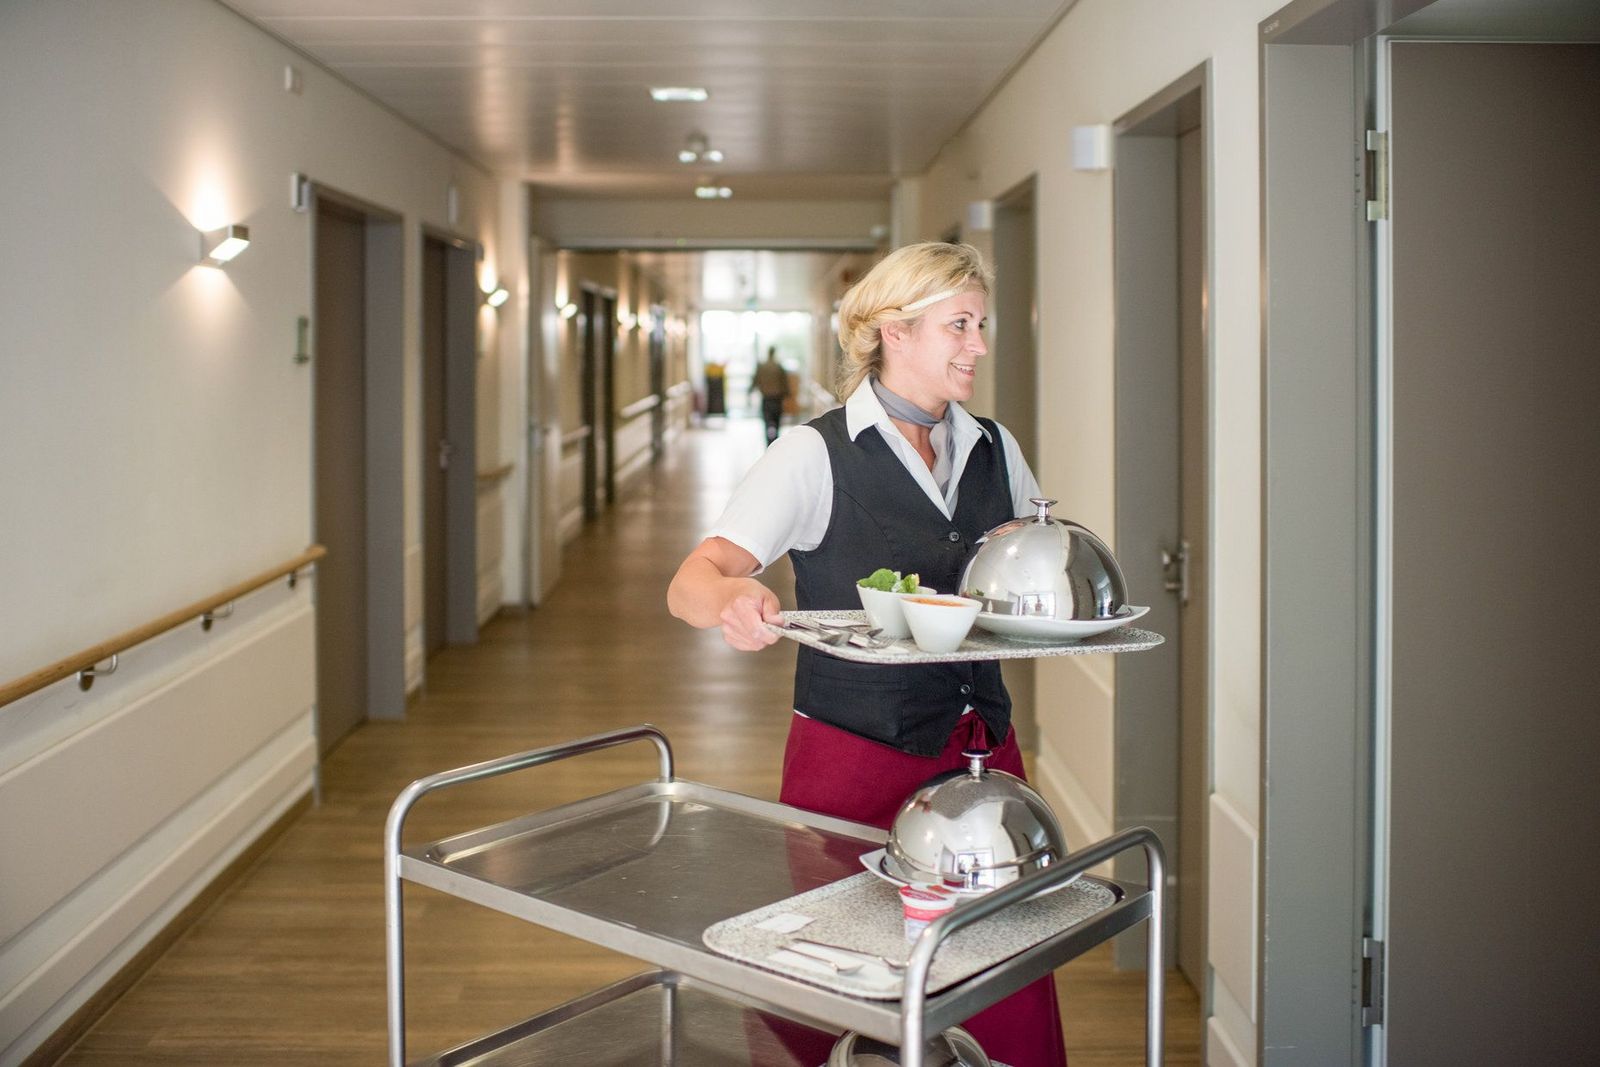 Adrett gekleidete Servicemitarbeiterin bringt das Essen auf einem Tablett ins Patientenzimmer